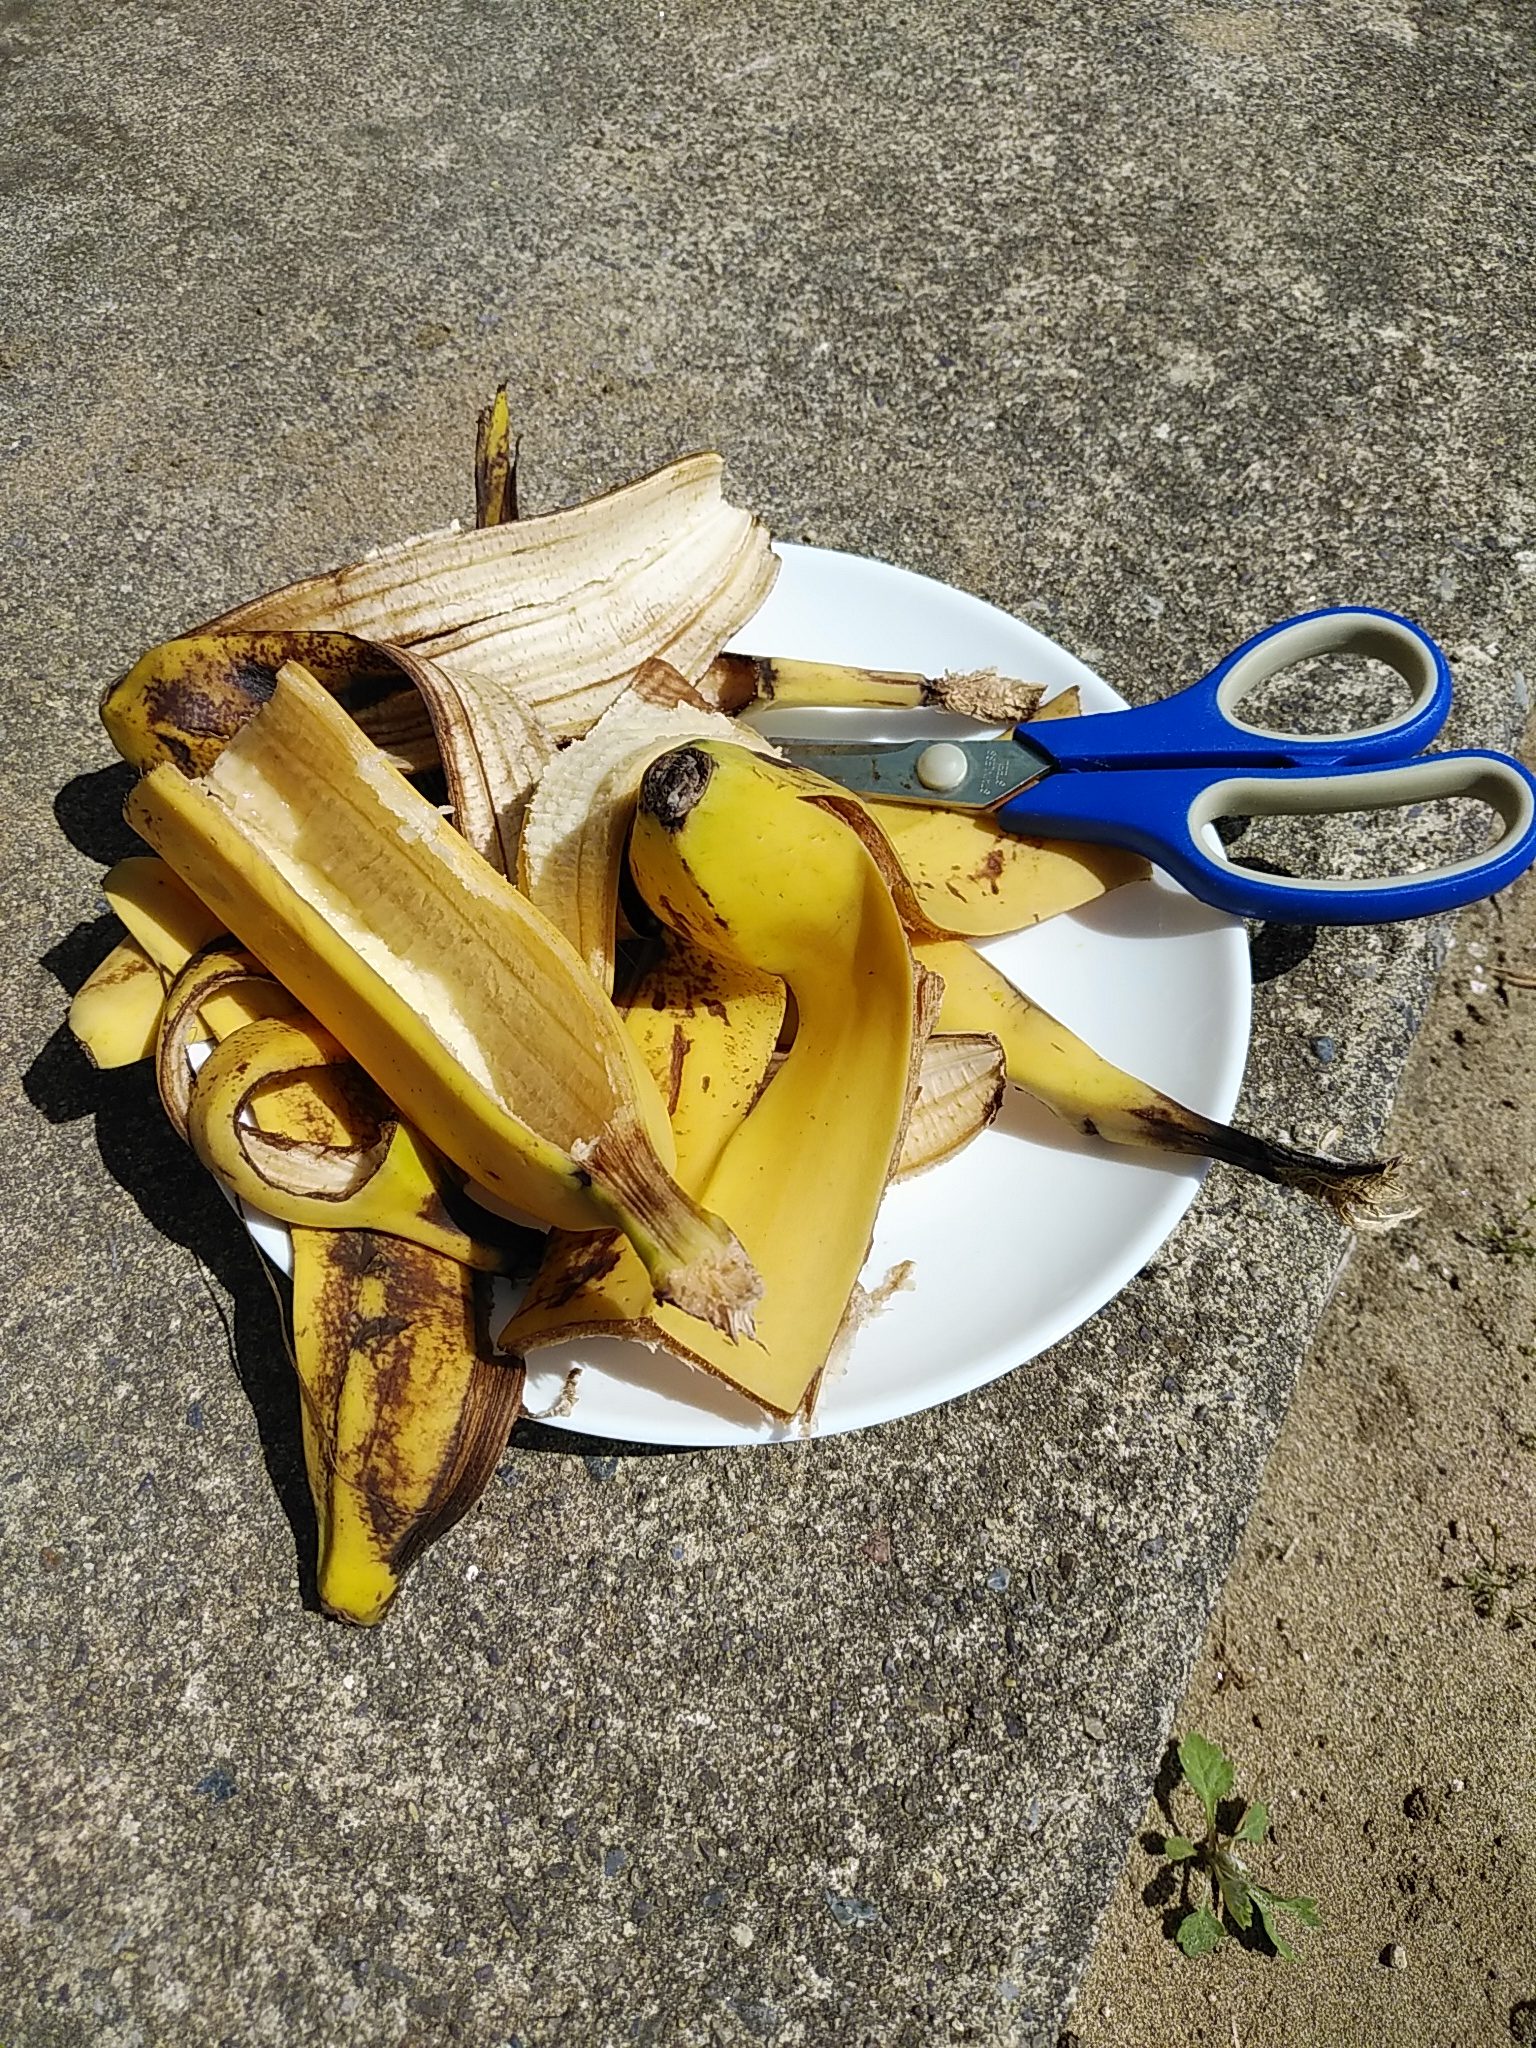 シマミミズのエサ ミミズの好物バナナを使った餌やりの手順 新潟ミミズ情報局 ミミズコンポストのすゝめ